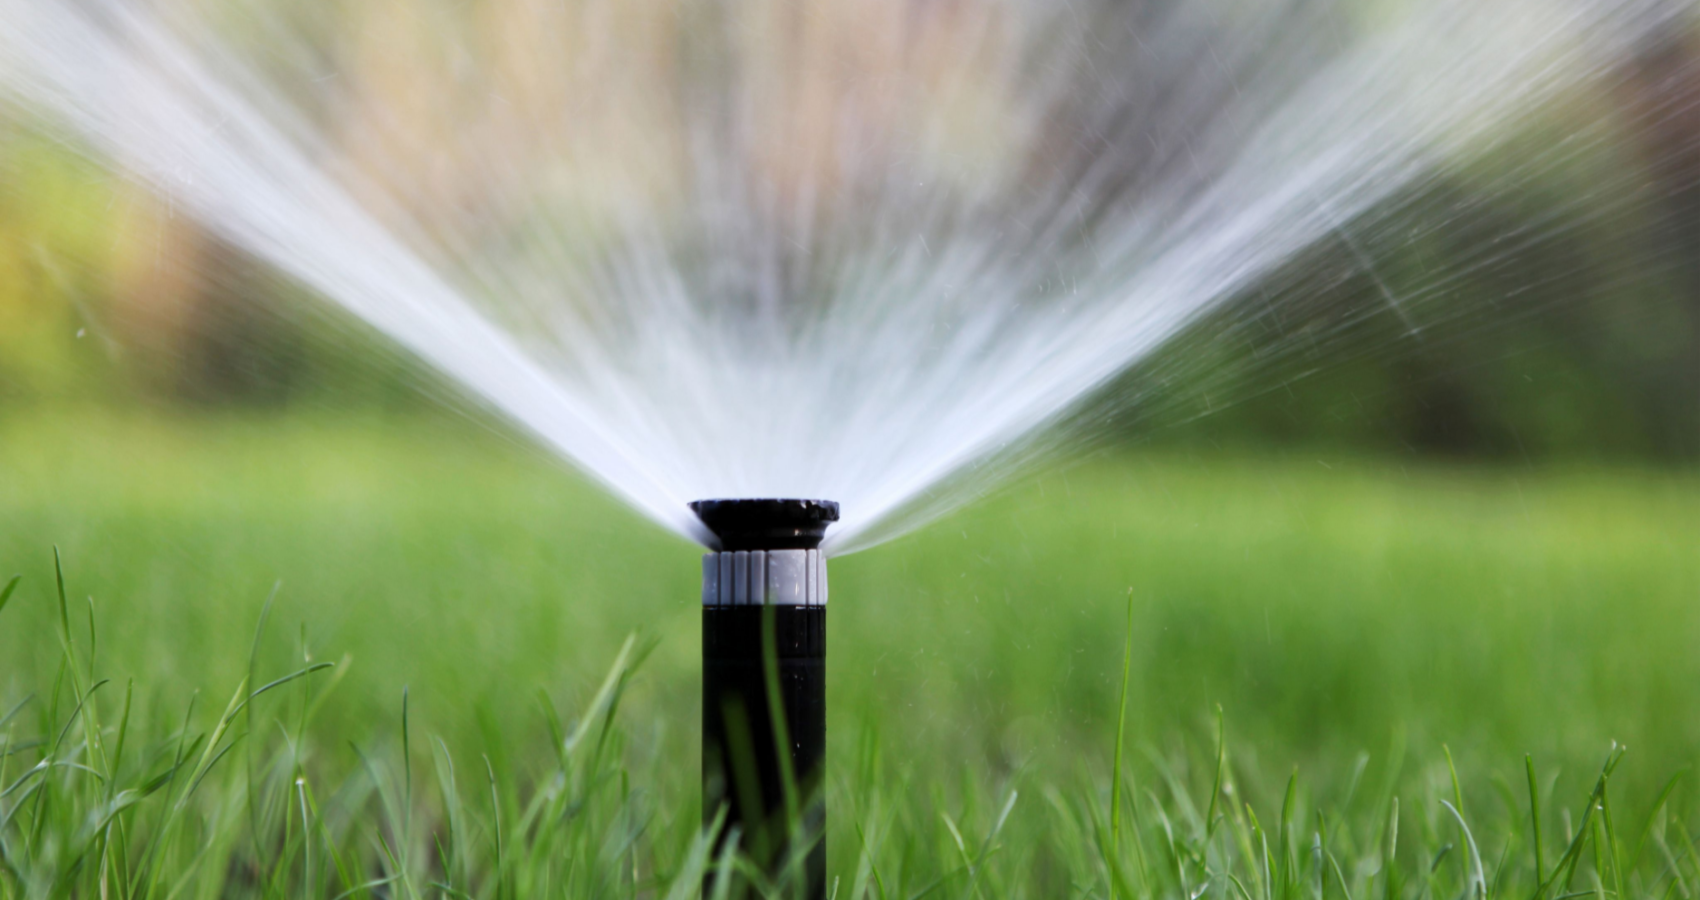 Sprinkler System Installation Webster Groves, MO | Lawn Care for Webster Groves, MO Area | Lawn Sprinklers of St. Louis